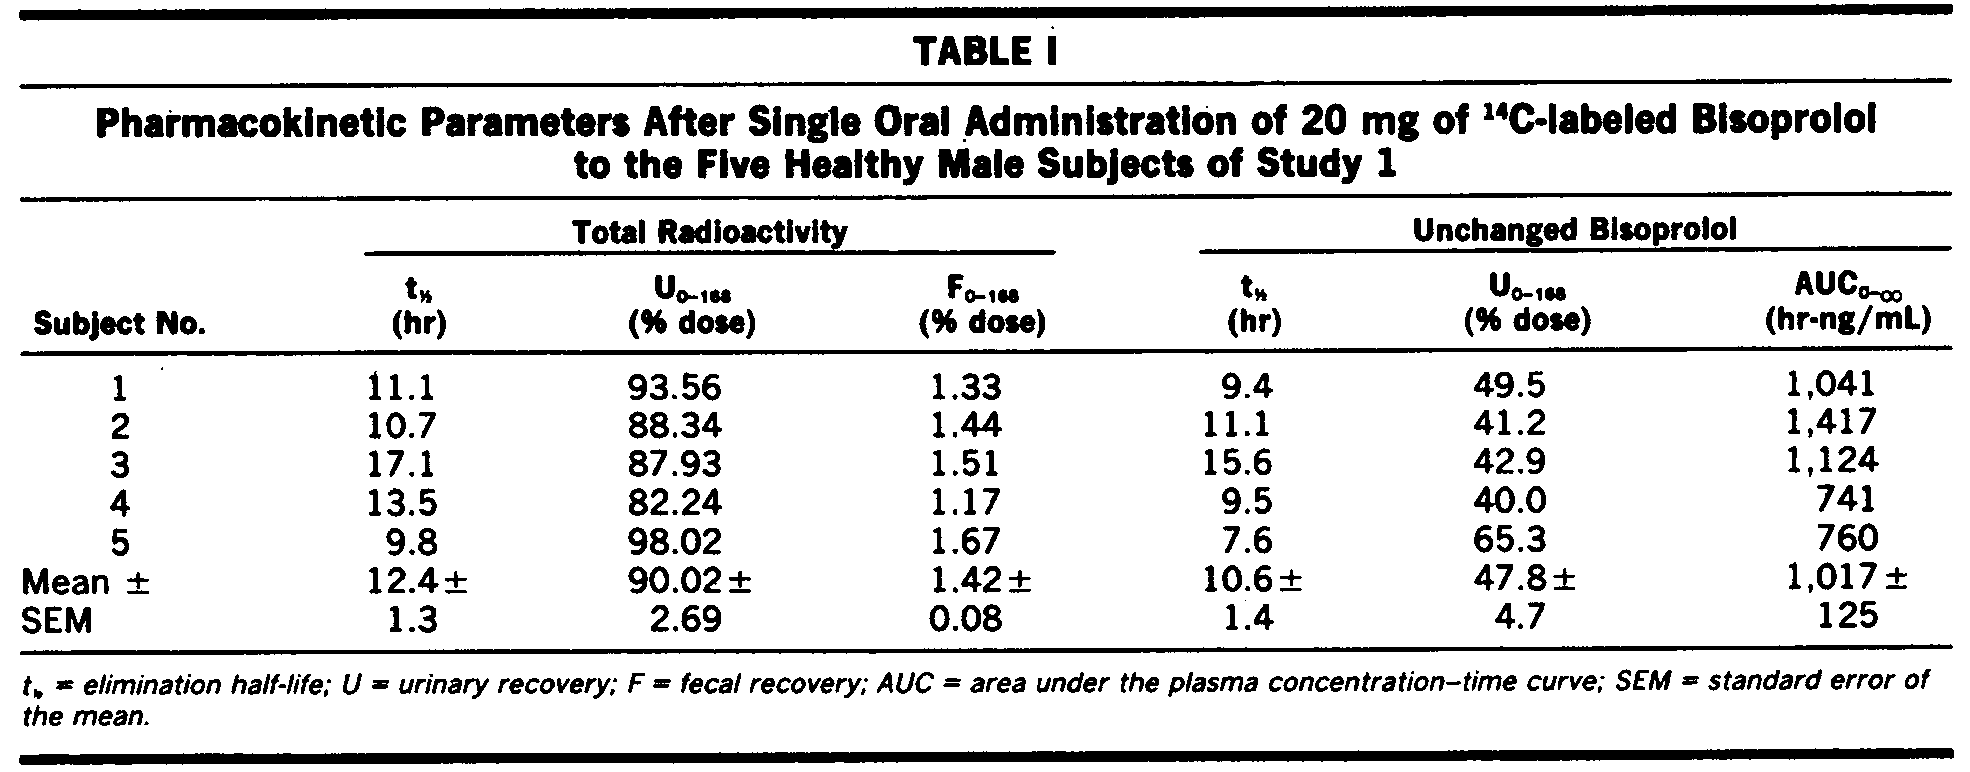 건강한 성인 남성 5인에 14C-표지 비소프롤롤(bisoprolol) 20 mg을 경구 단회 투여한 후 얻은 약동학 변수(Leopold et al., 1986).